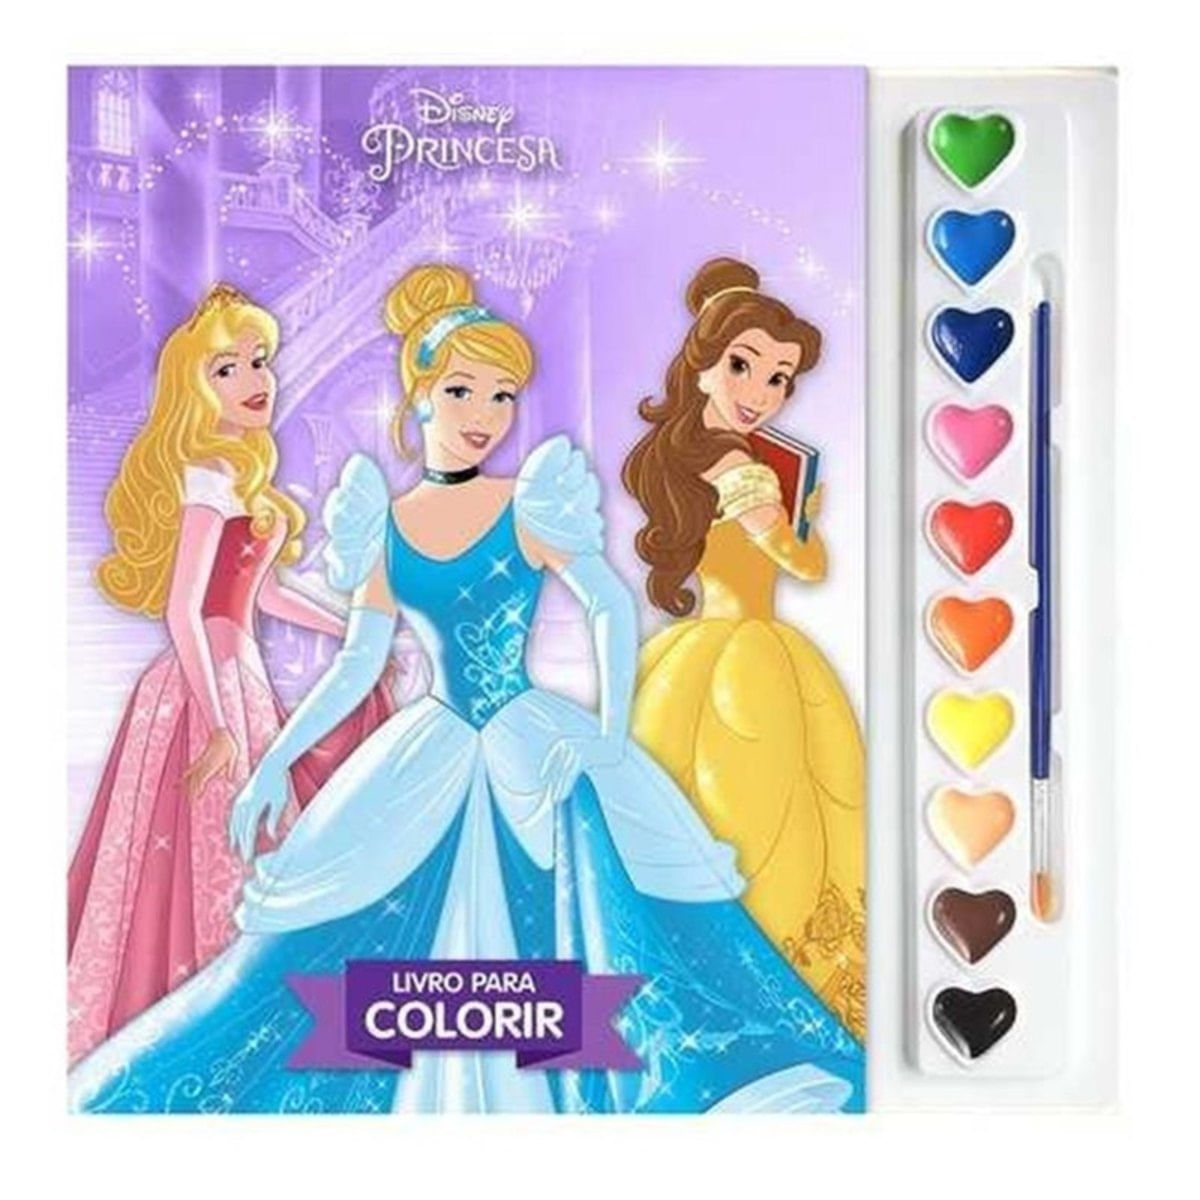 Colorindo as Princesas da Disney, Desenho dos Filmes da Disney Princess